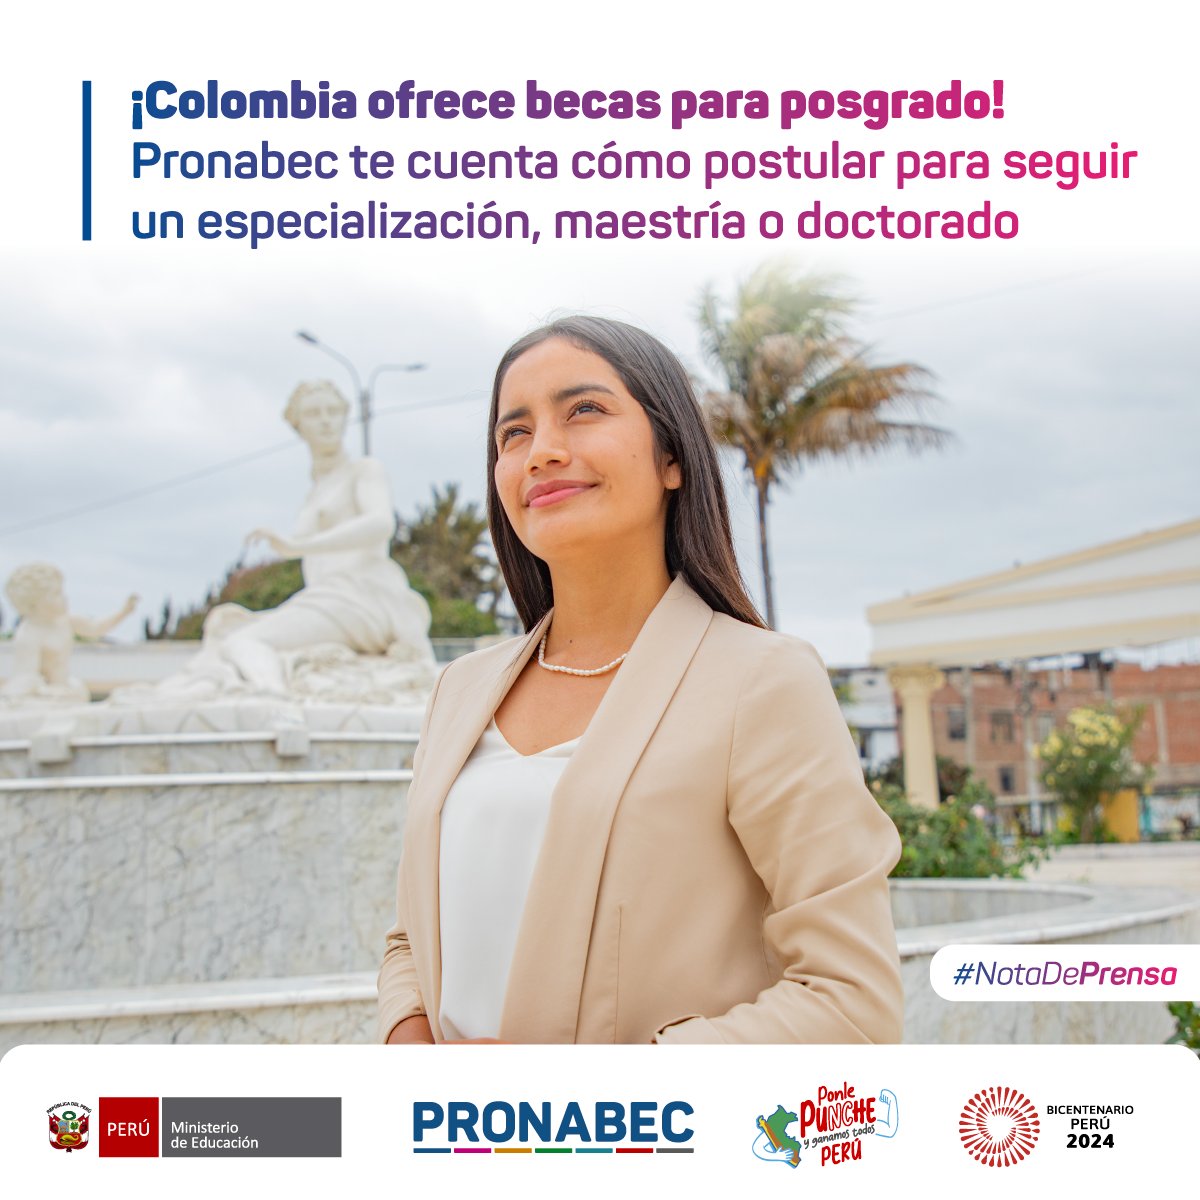 📰 La beca del Gobierno colombiano cubre el total de la matrícula y otorga una póliza de salud, una visa de cortesía, un estipendio mensual, entre otros beneficios. Postula hasta el domingo 9 de junio de 2024. ✨

📌 #NotaDePrensa ➡️ bit.ly/44Pib1C